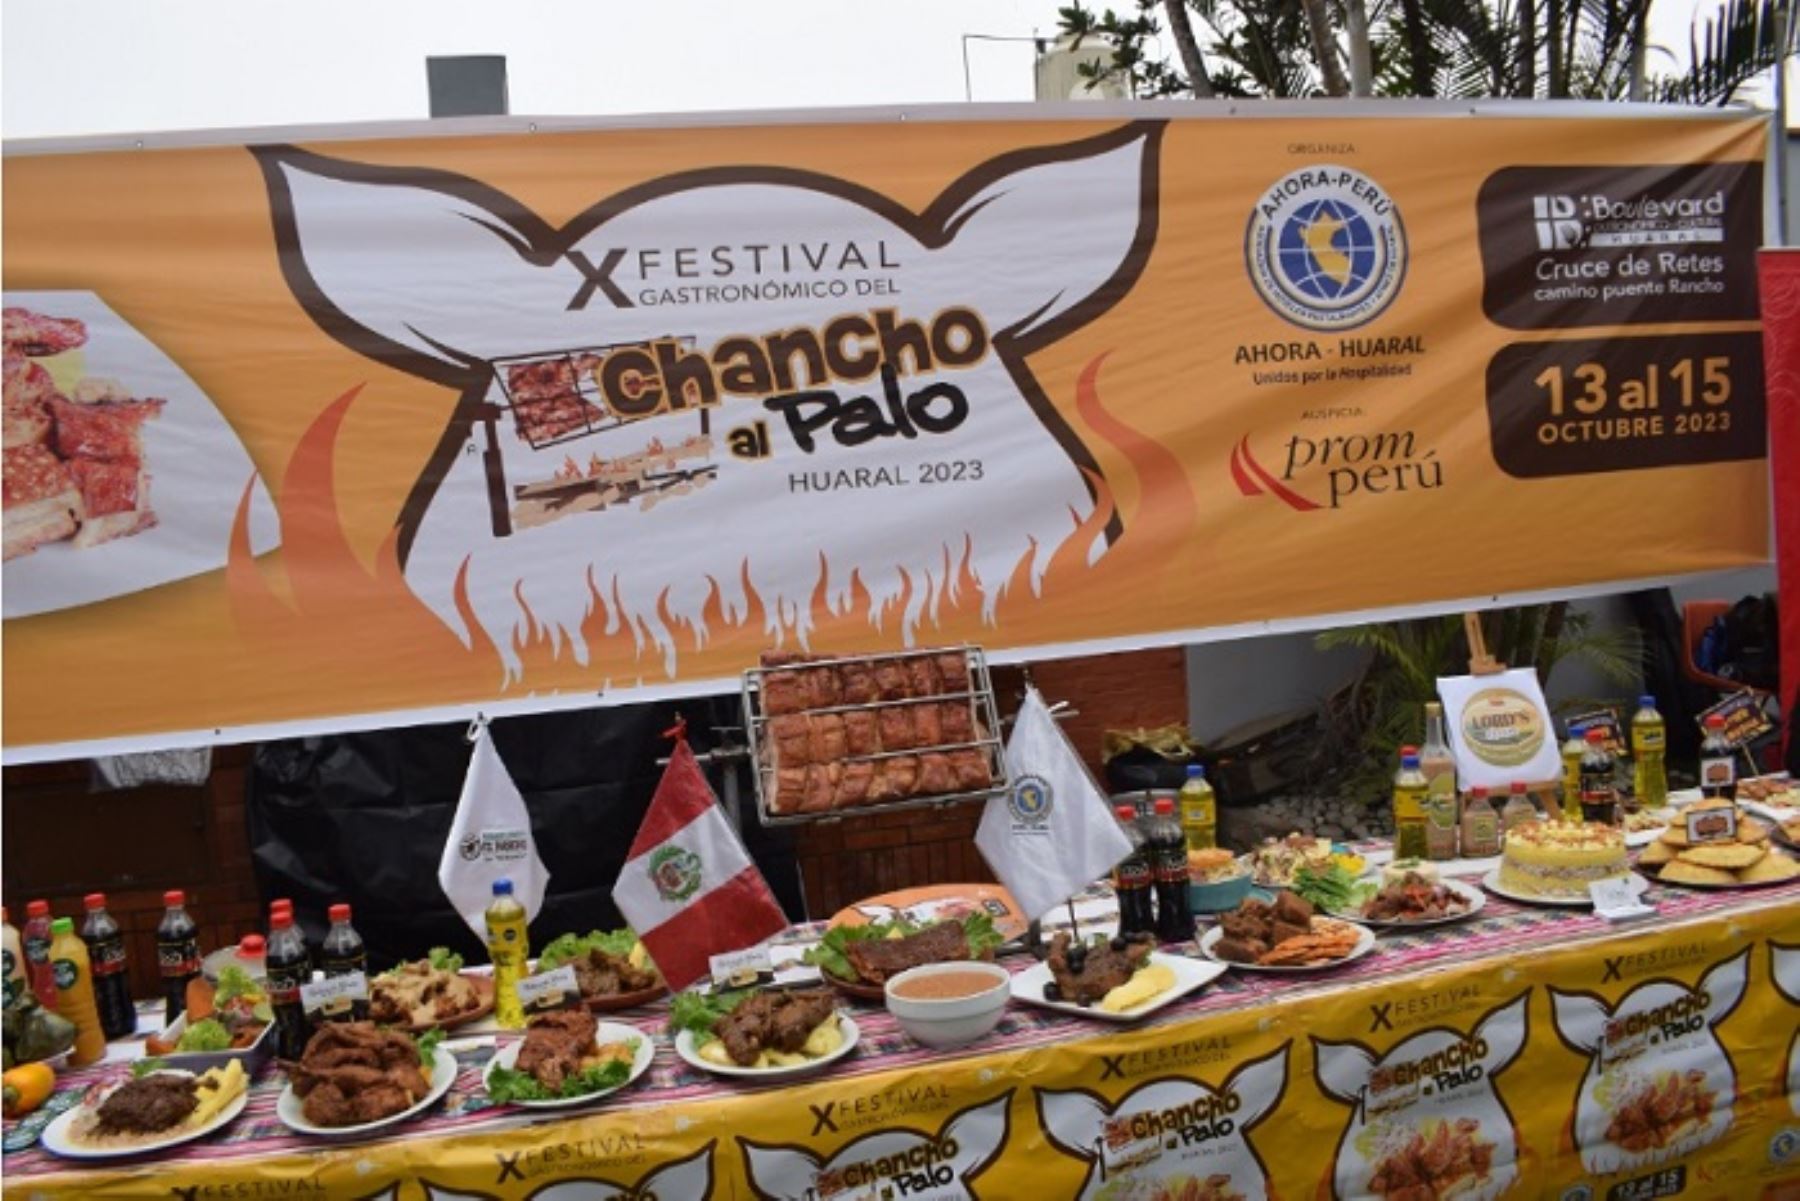 Huaral: El X Festival del Chancho al Palo sorprenderá con una selección de 50 exquisitos platos fusionados.